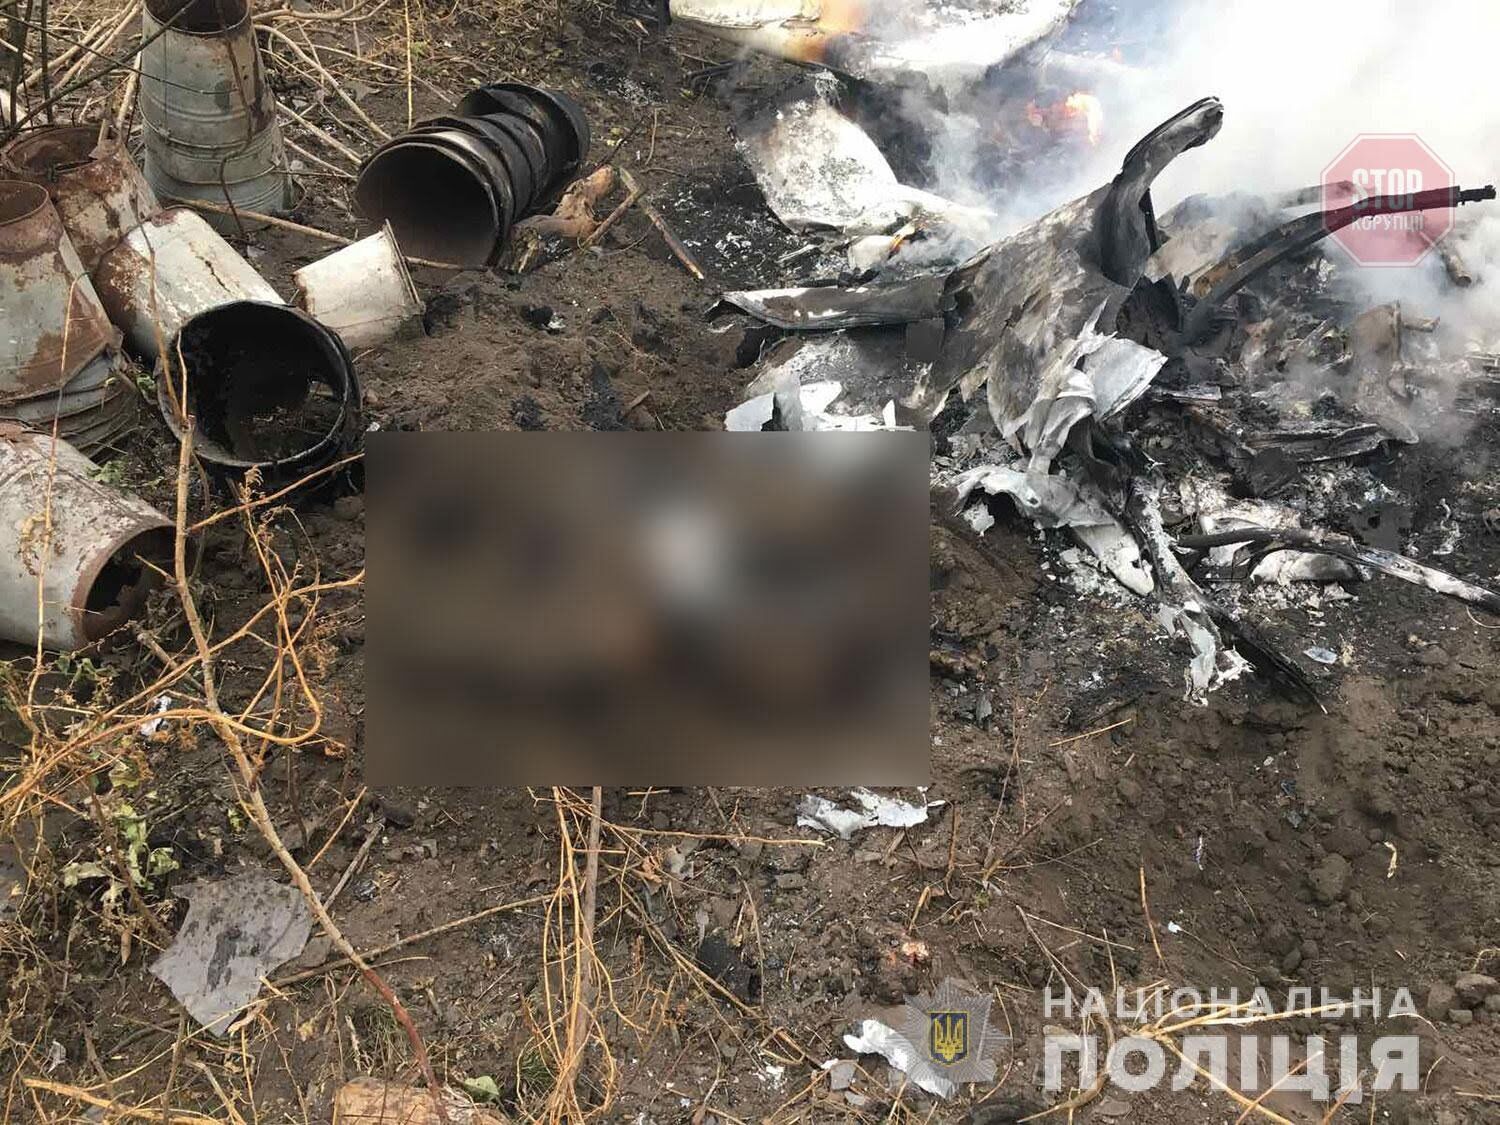 Упав гелікоптер, загинув пілот: на Полтавщині сталася трагедія (фото)